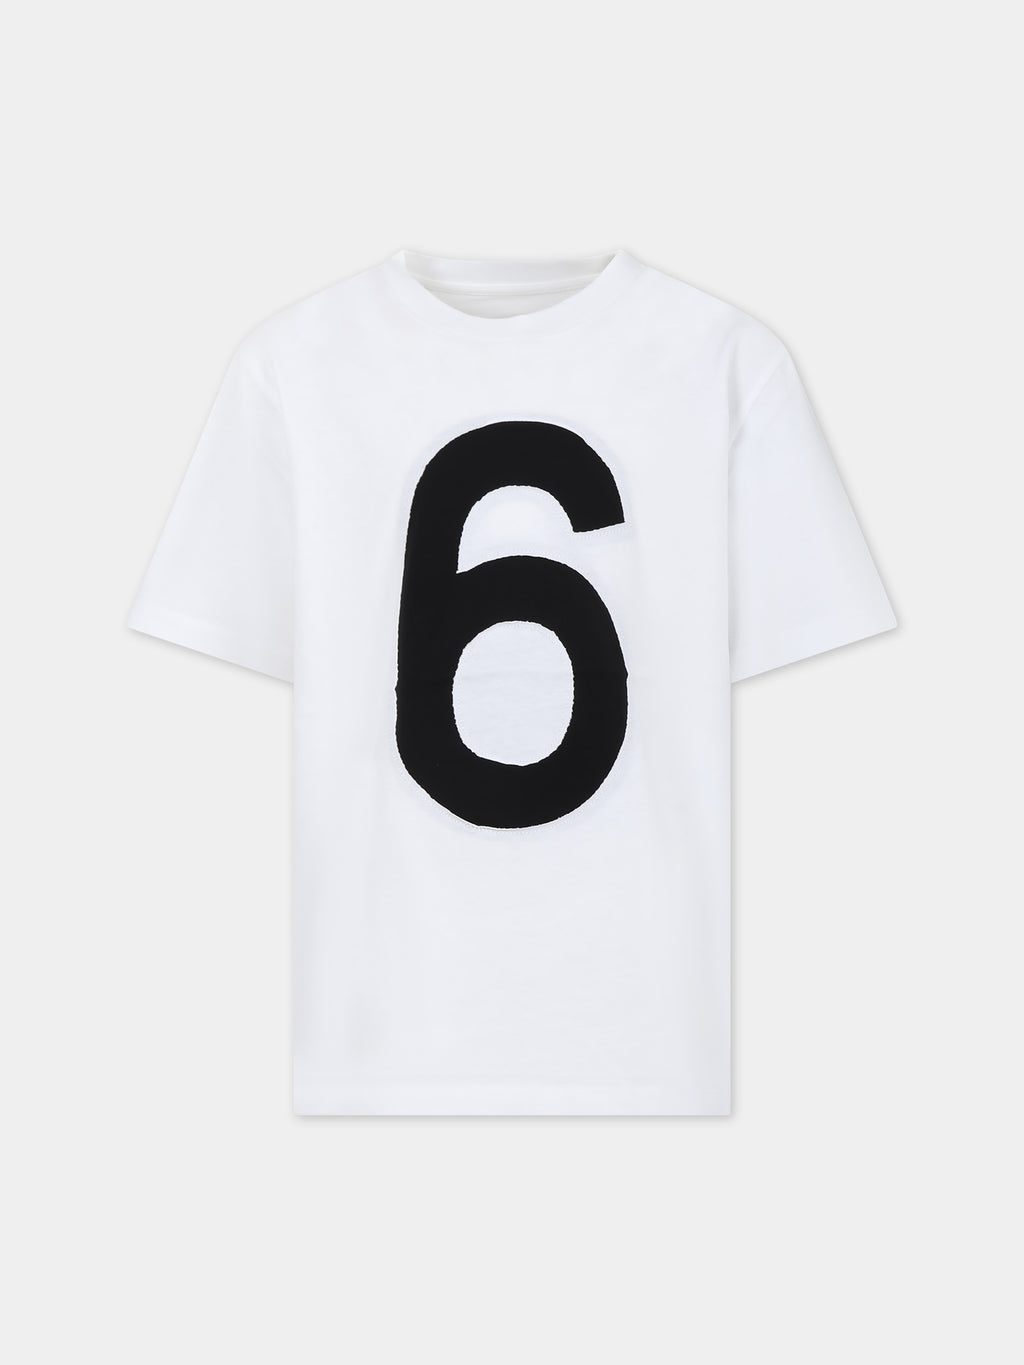 T-shirt bianca per bambini con numero 6